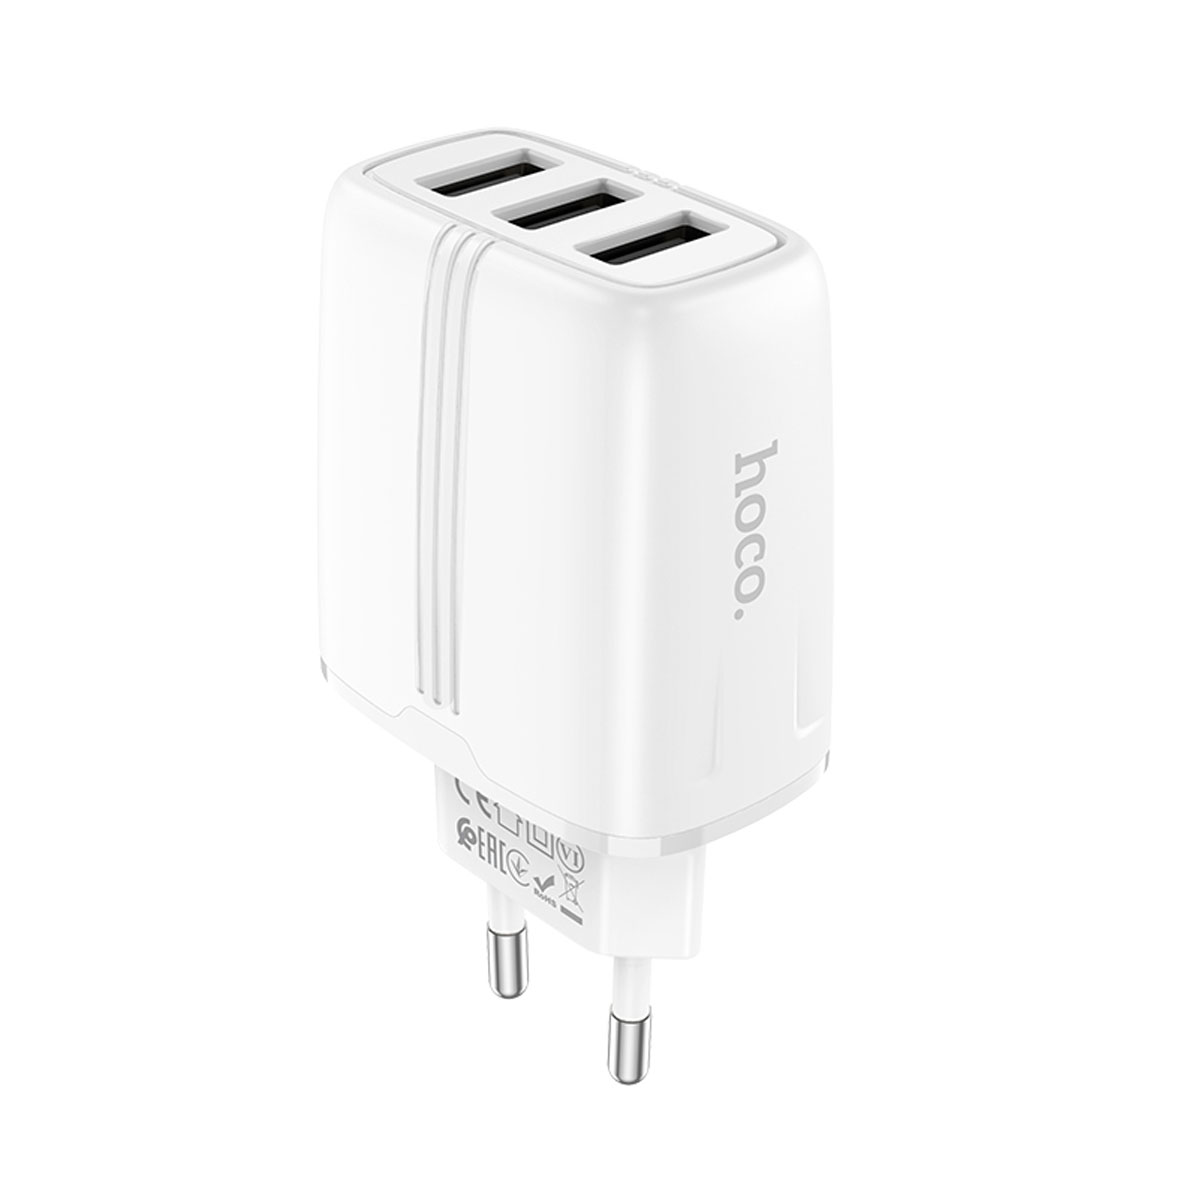 СЗУ (Сетевое зарядное устройство) HOCO N15 Amazing, 2.4A, 3 USB, цвет белый